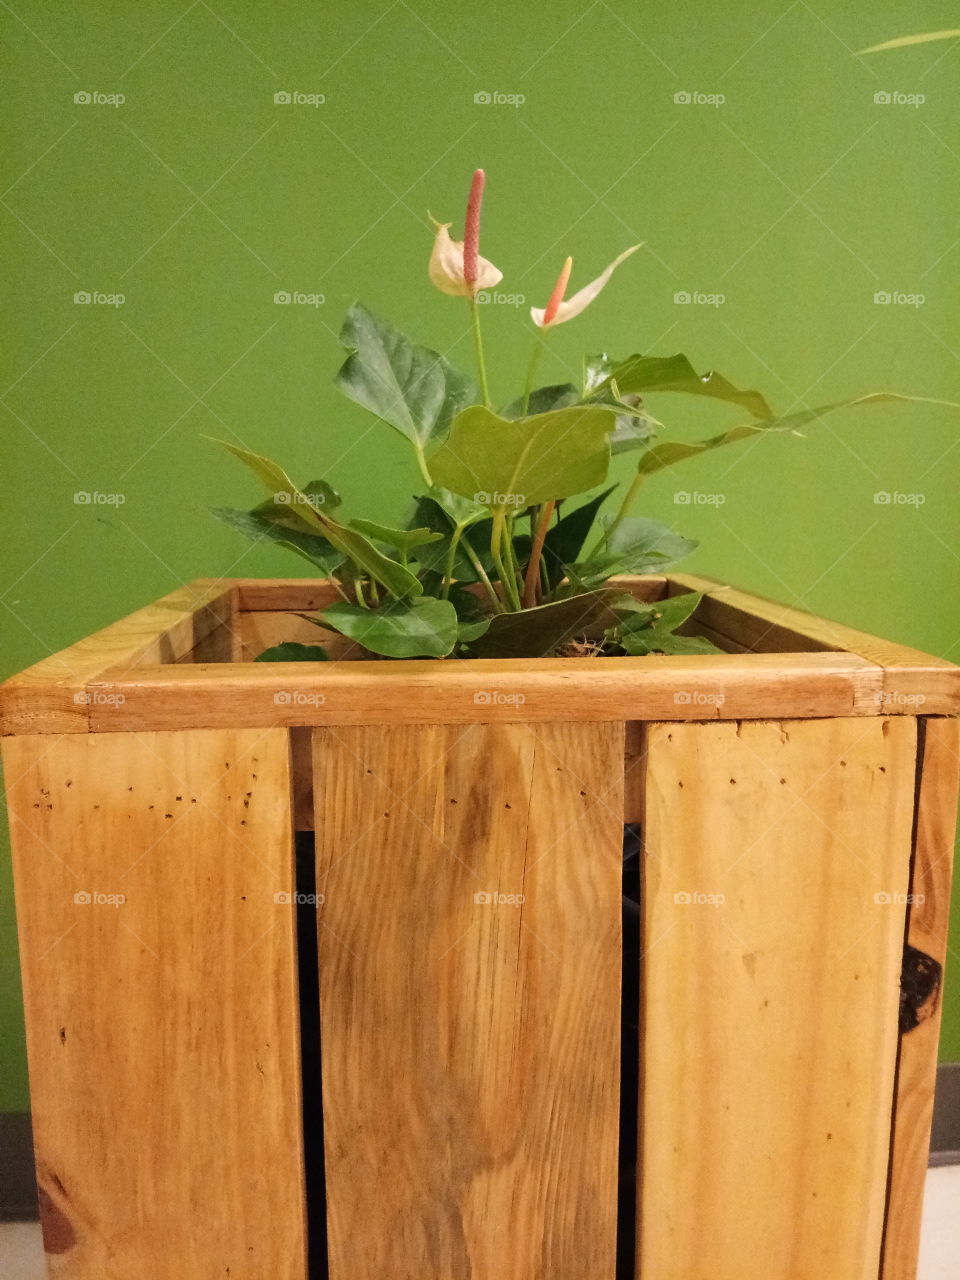 box
wood
flower
anthurium